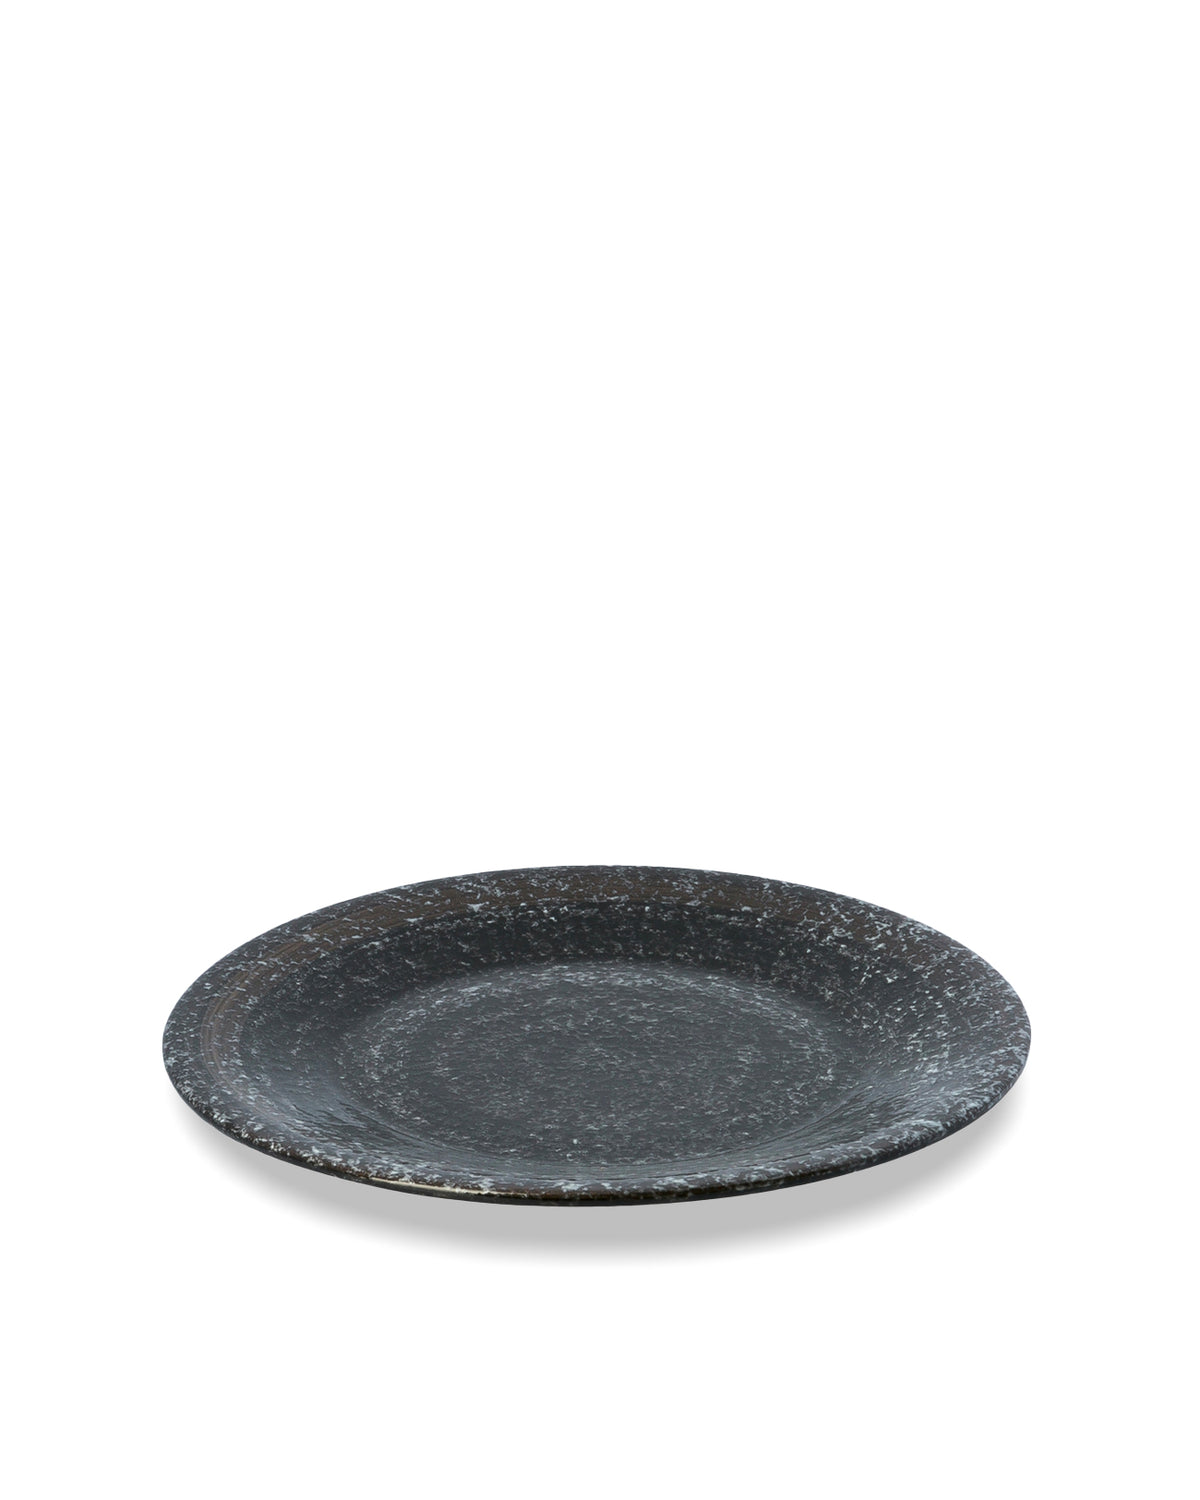 Granite Christian Plate